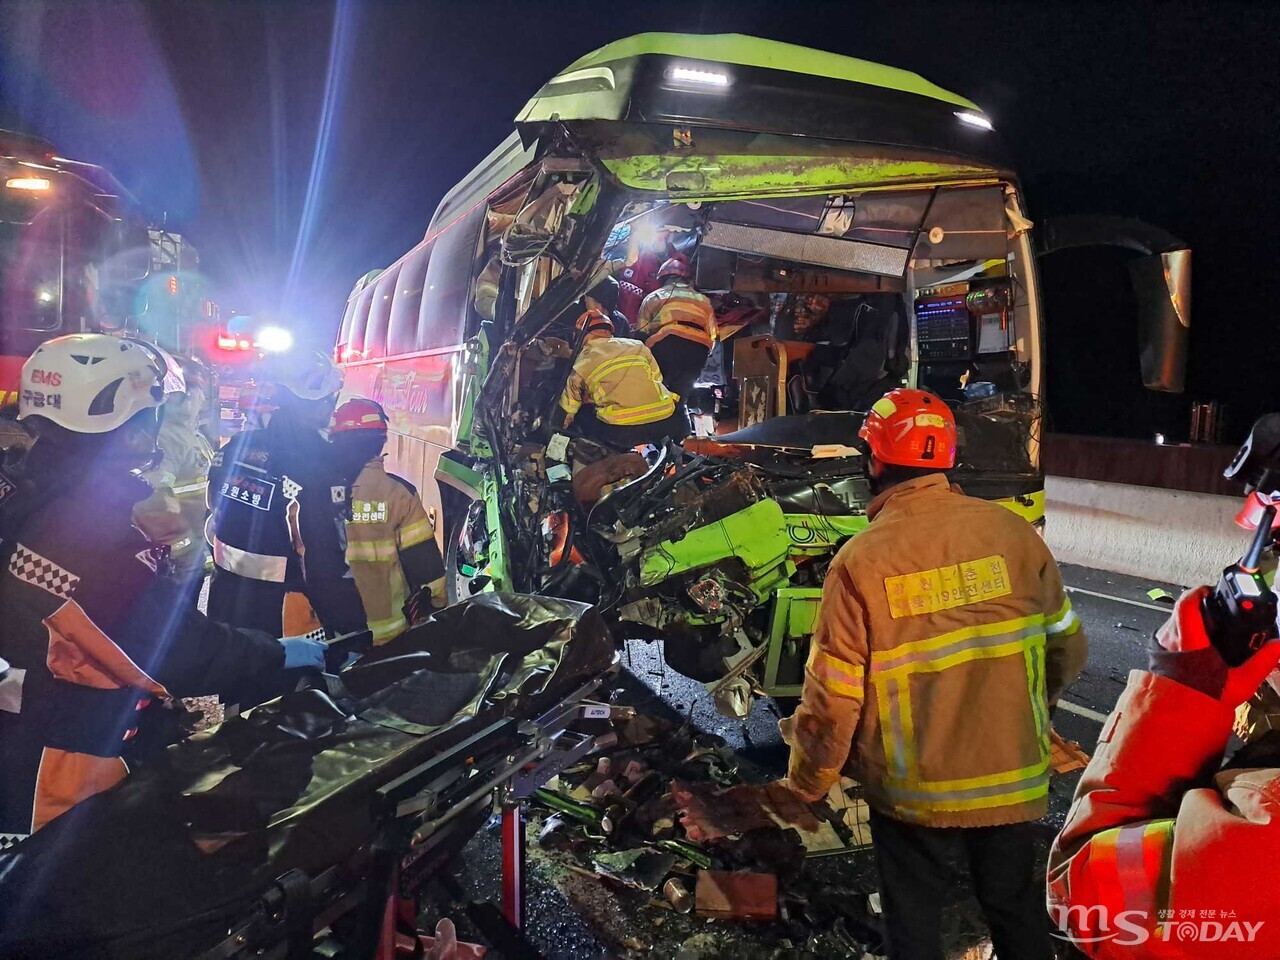 28일 오후 7시 28분쯤 춘천 중앙고속도로에서 버스와 화물차가 추돌하는 사고가 발생했다. (사진=강원특별자치도소방본부)